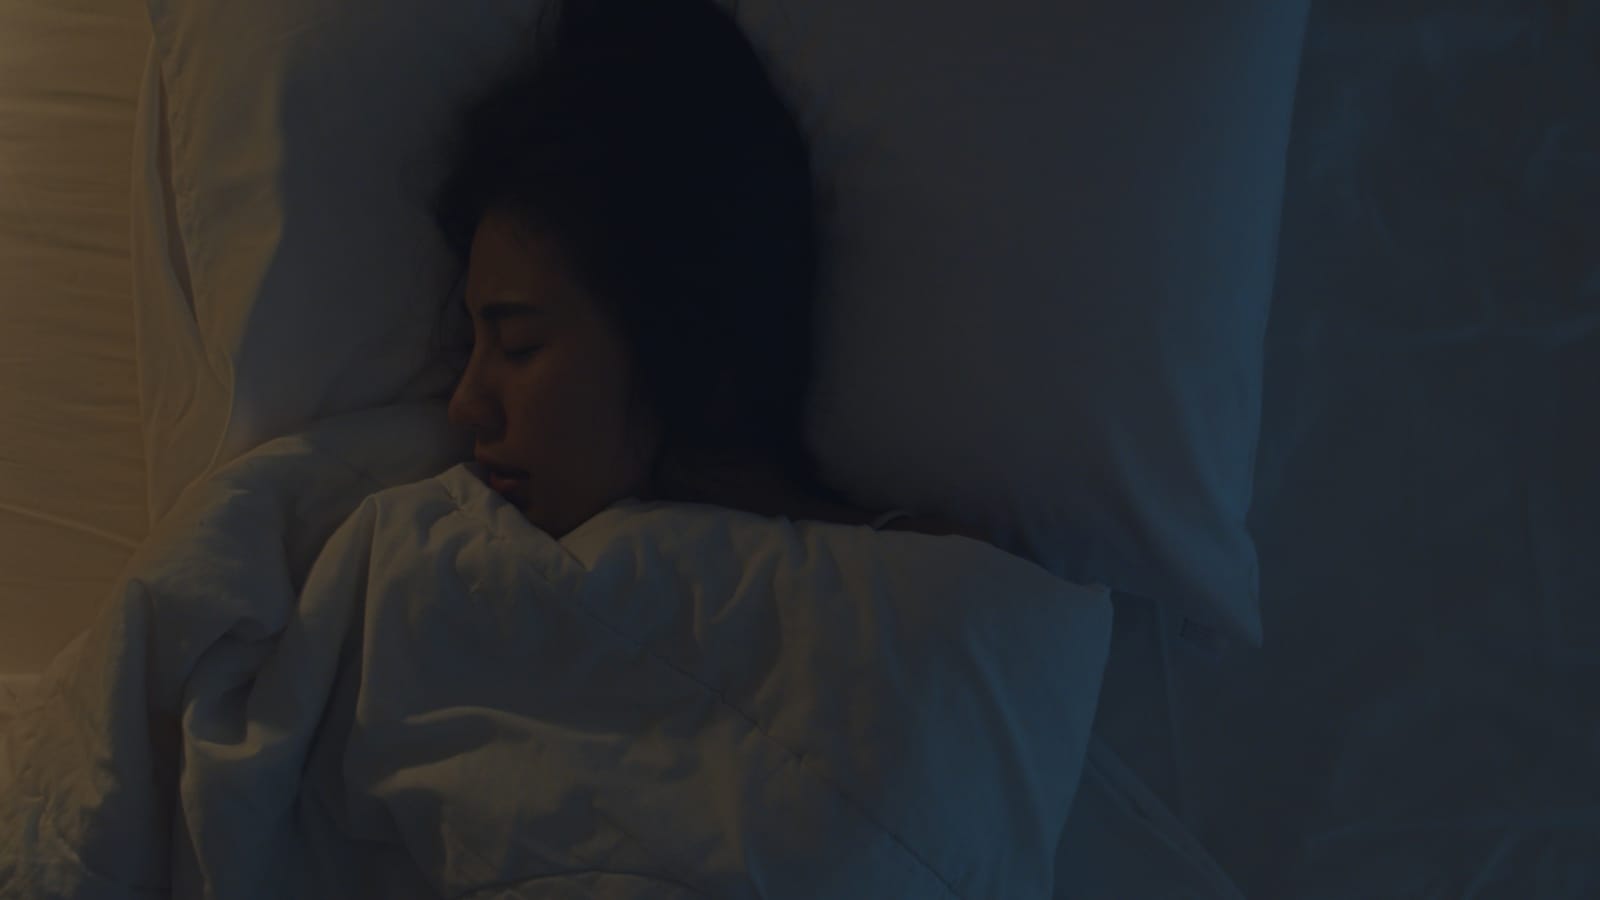 8 Manfaat Mematikan Lampu saat Tidur, Nomor 7 Menyehatkan Mata